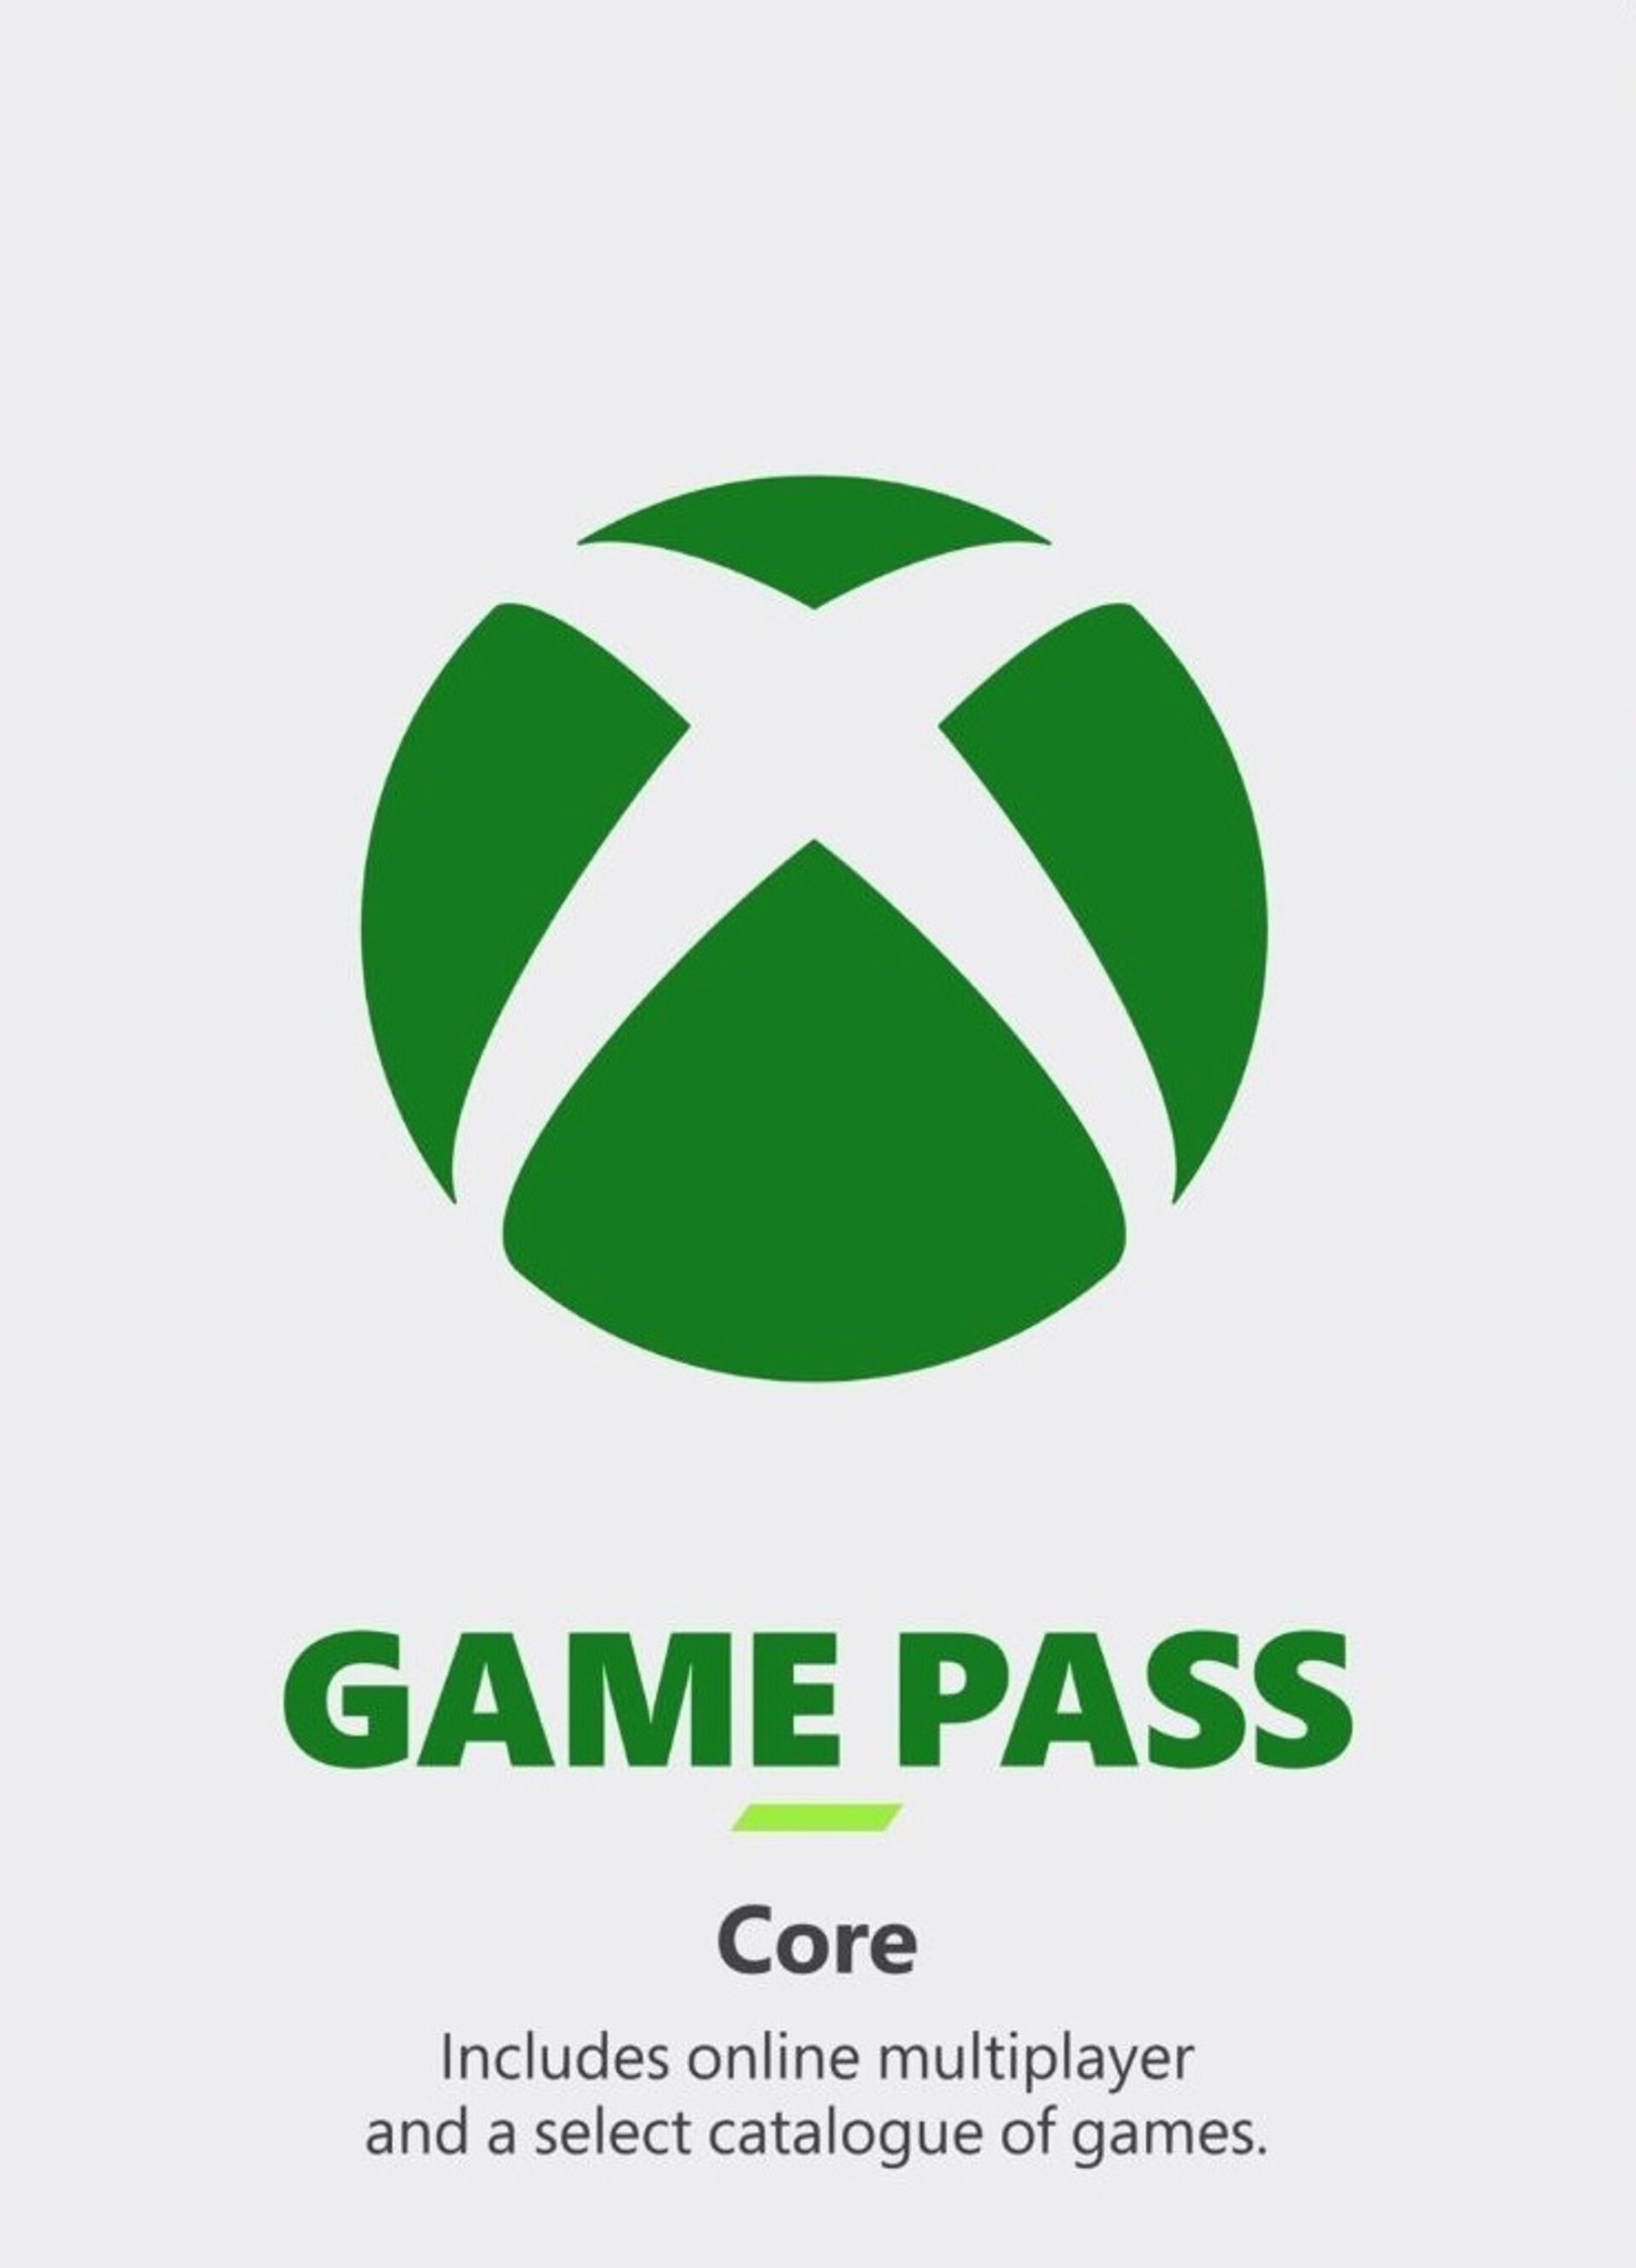 Jogos grátis de Xbox não exigem mais assinatura Live Gold no